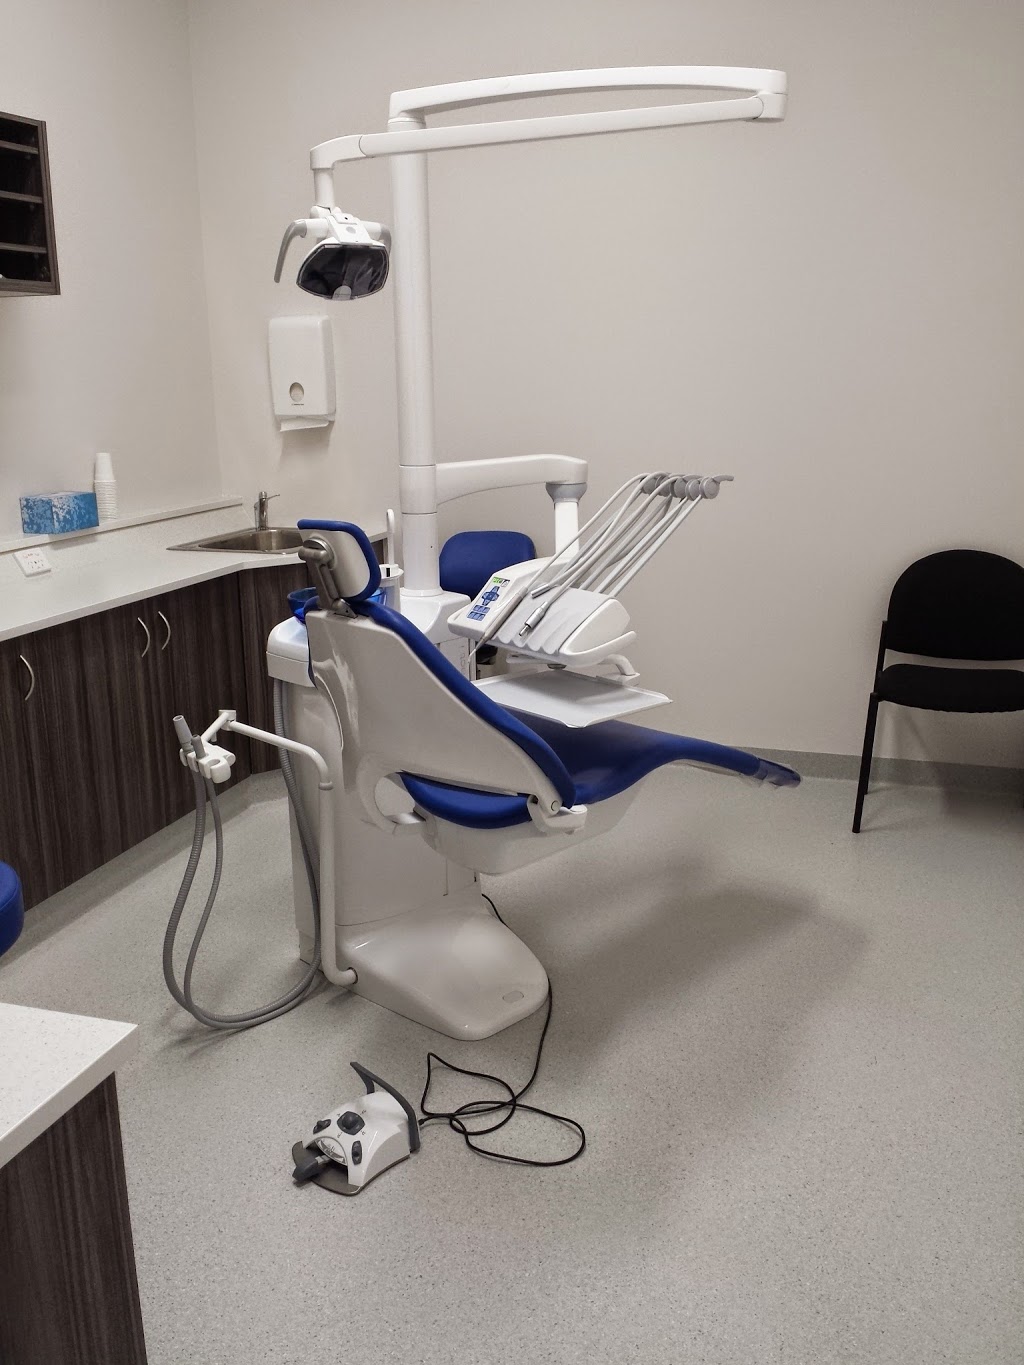 Ashburton Dental Centre | dentist | 9/62 Ashburton Dr, Gosnells WA 6110, Australia | 0894908777 OR +61 8 9490 8777